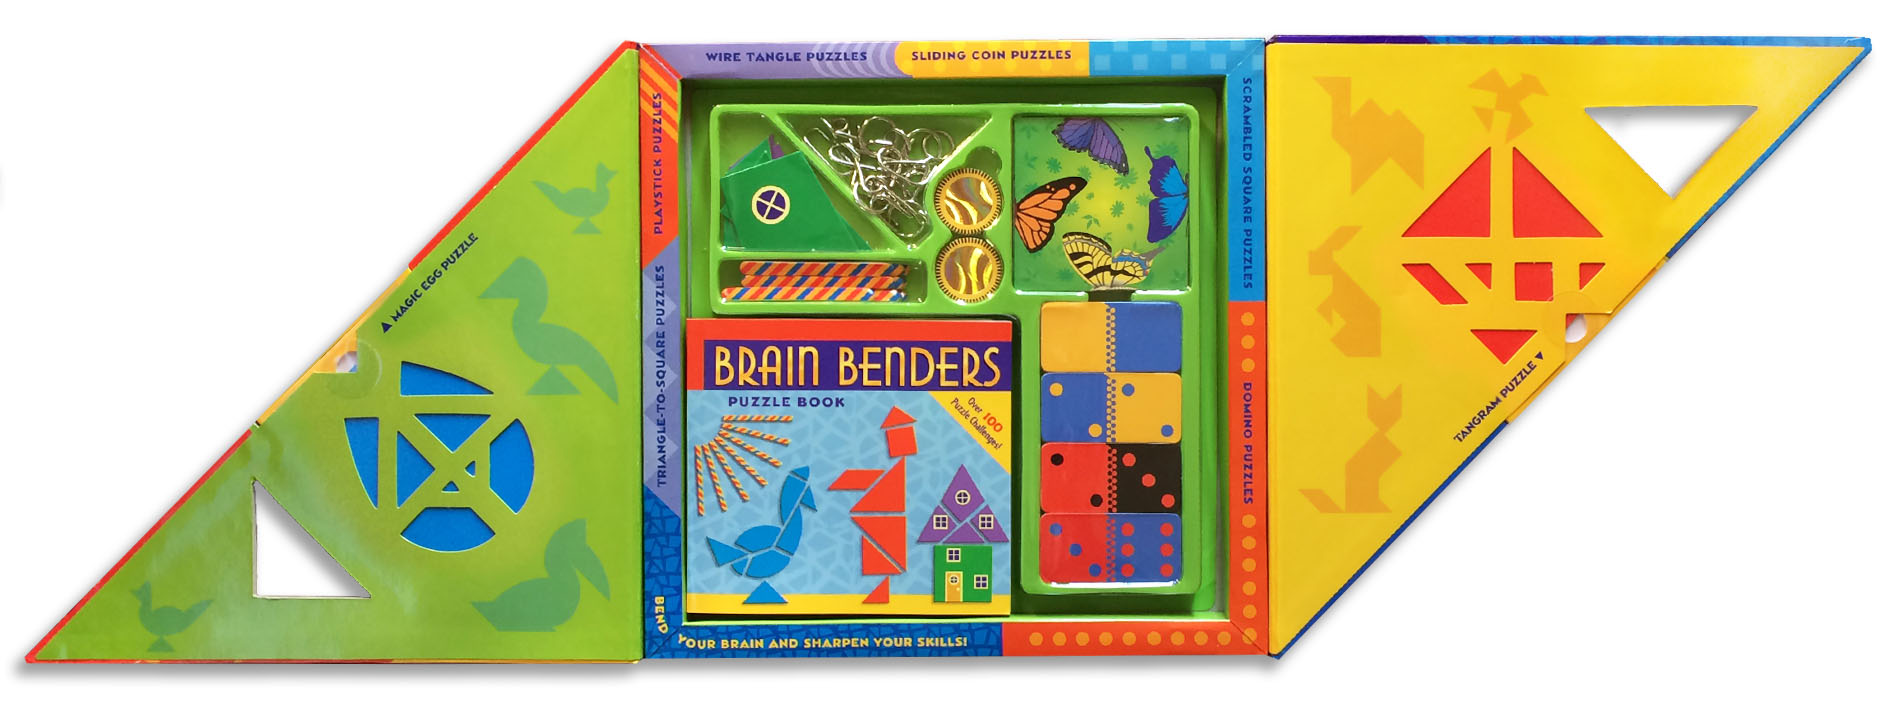 brain benders book design